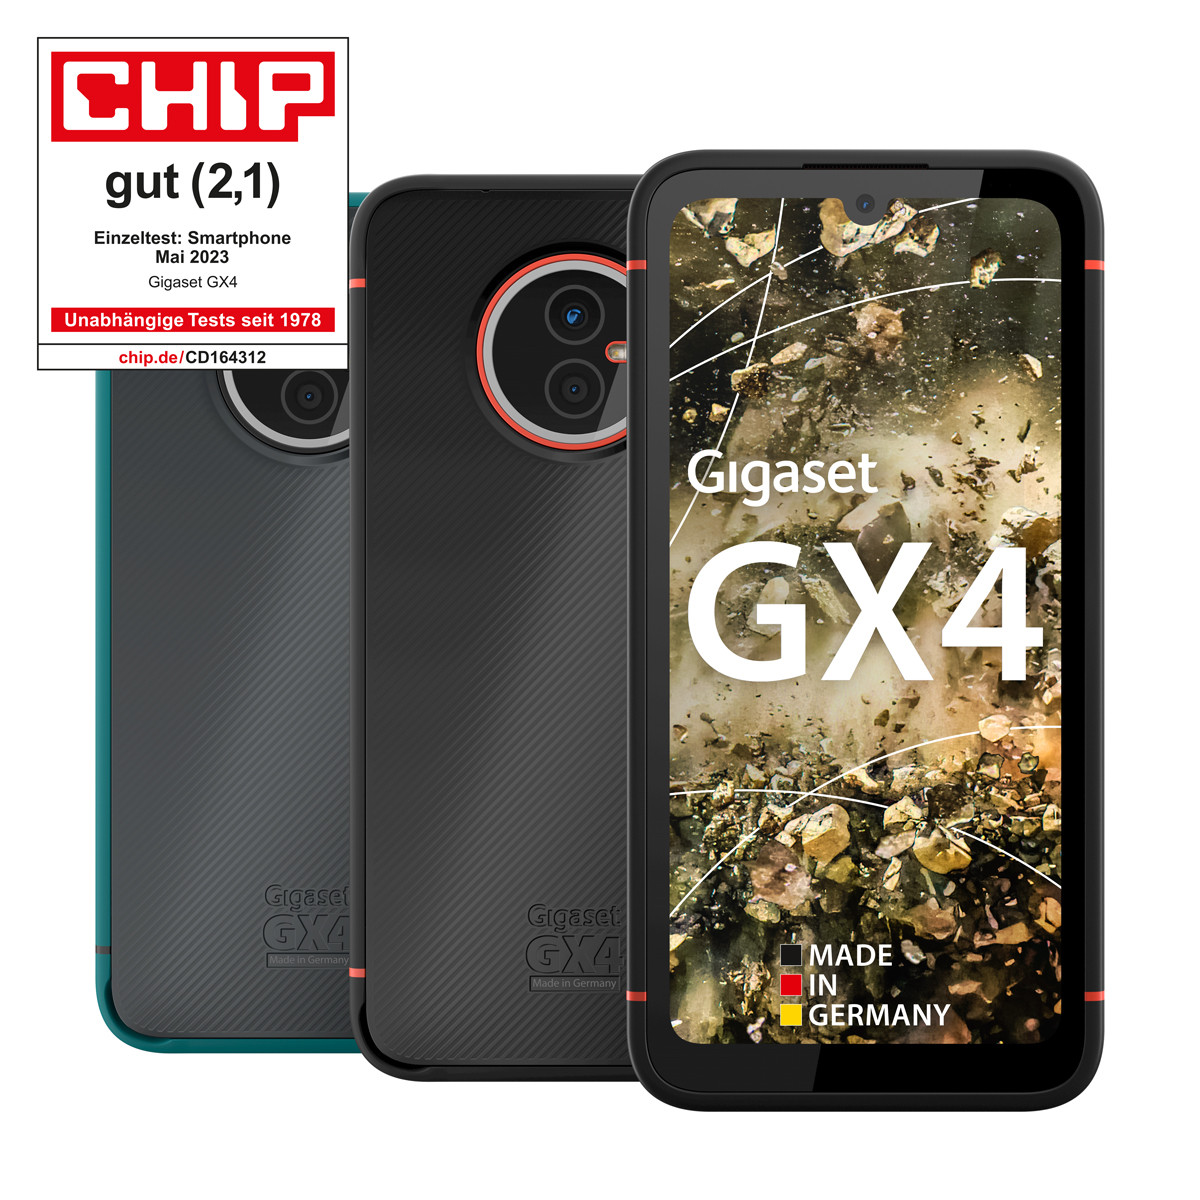 Das kaufen online Gigaset GX4 | Outdoor-Smartphone